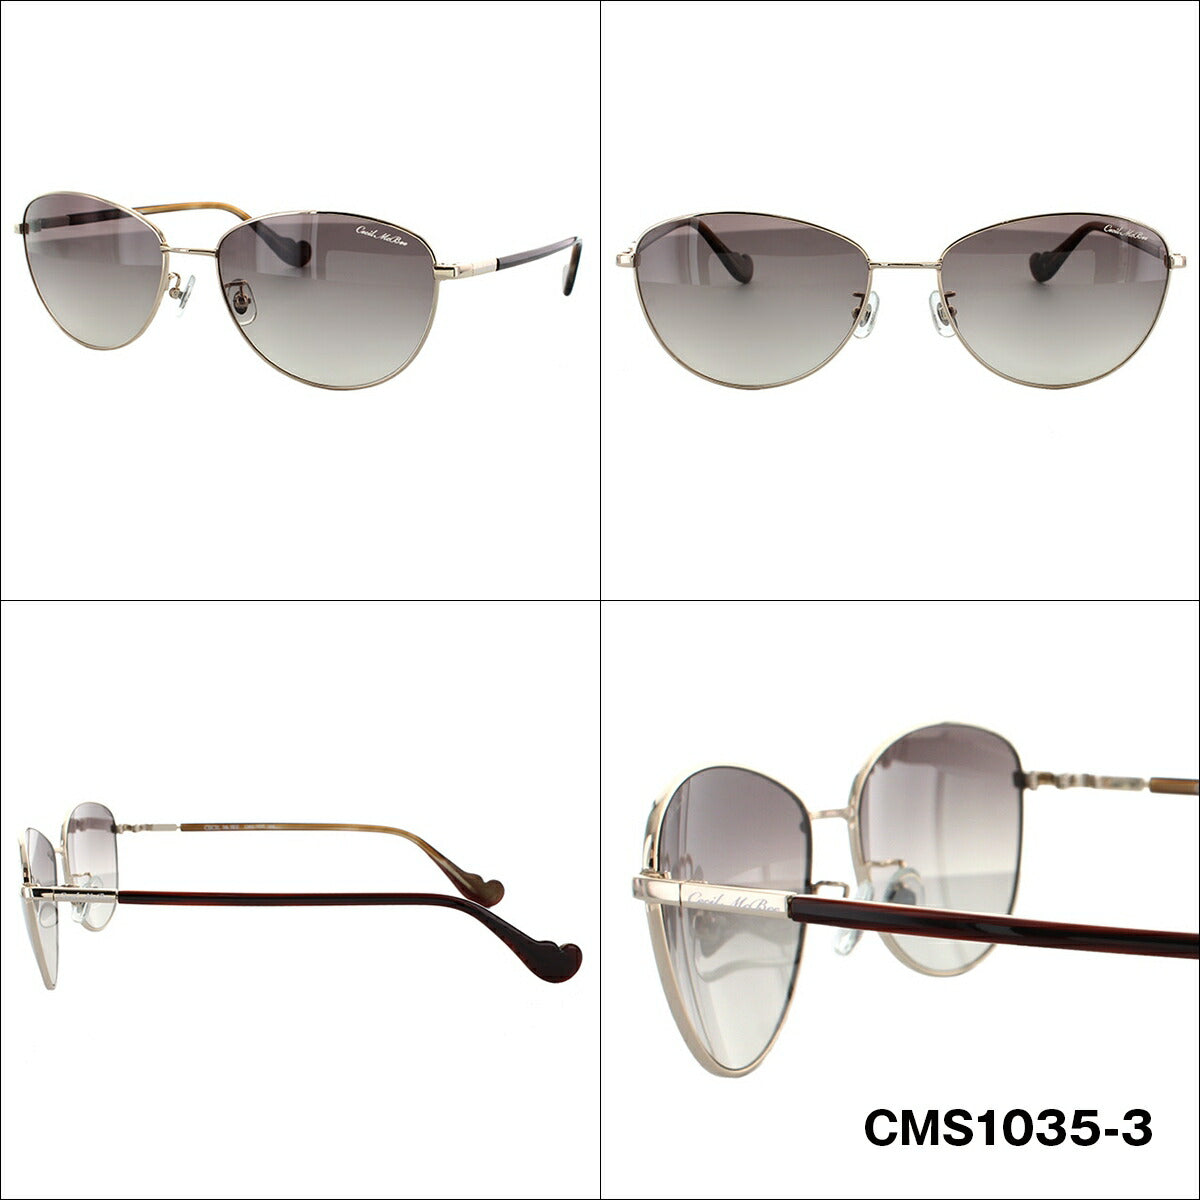 レディース サングラス CECIL McBEE セシルマクビー CMS 1035 全2色 57サイズ アジアンフィット 女性 UVカット 紫外線 対策 ブランド 眼鏡 メガネ アイウェア 人気 おすすめ ラッピング無料